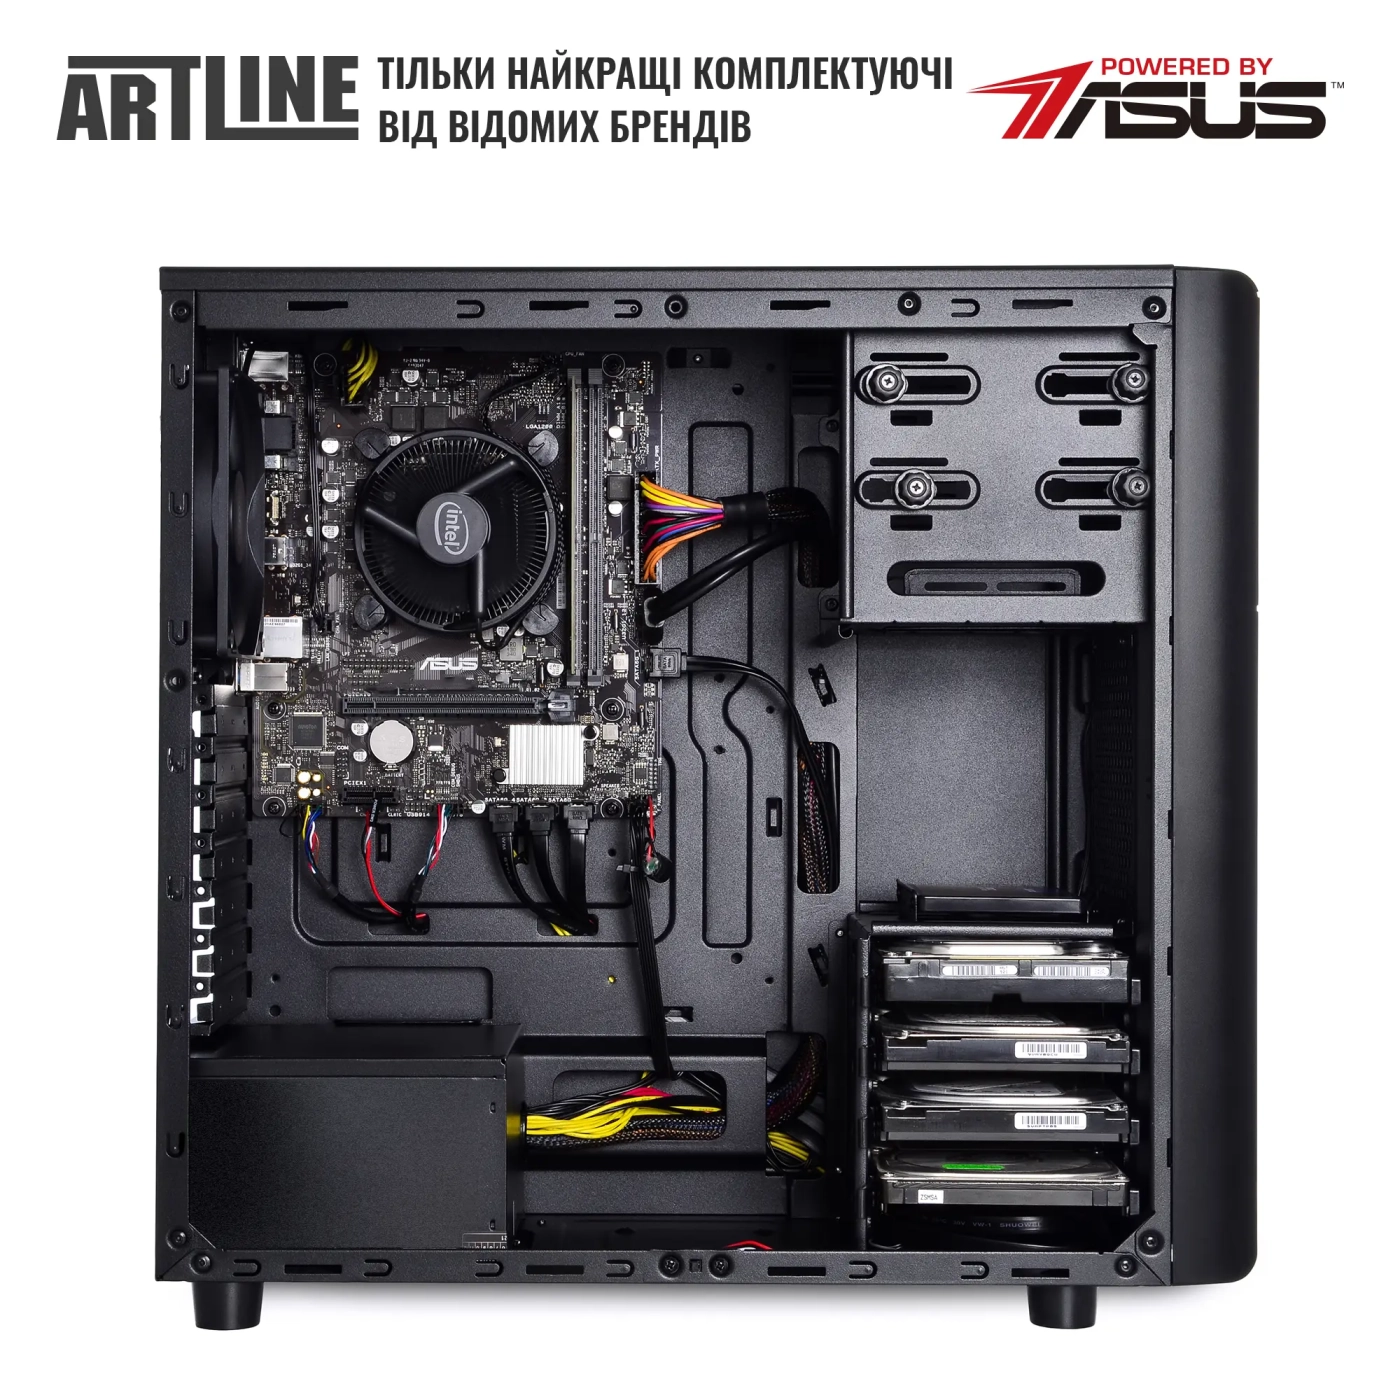 Купить Сервер ARTLINE Business T35 (T35v40) - фото 4